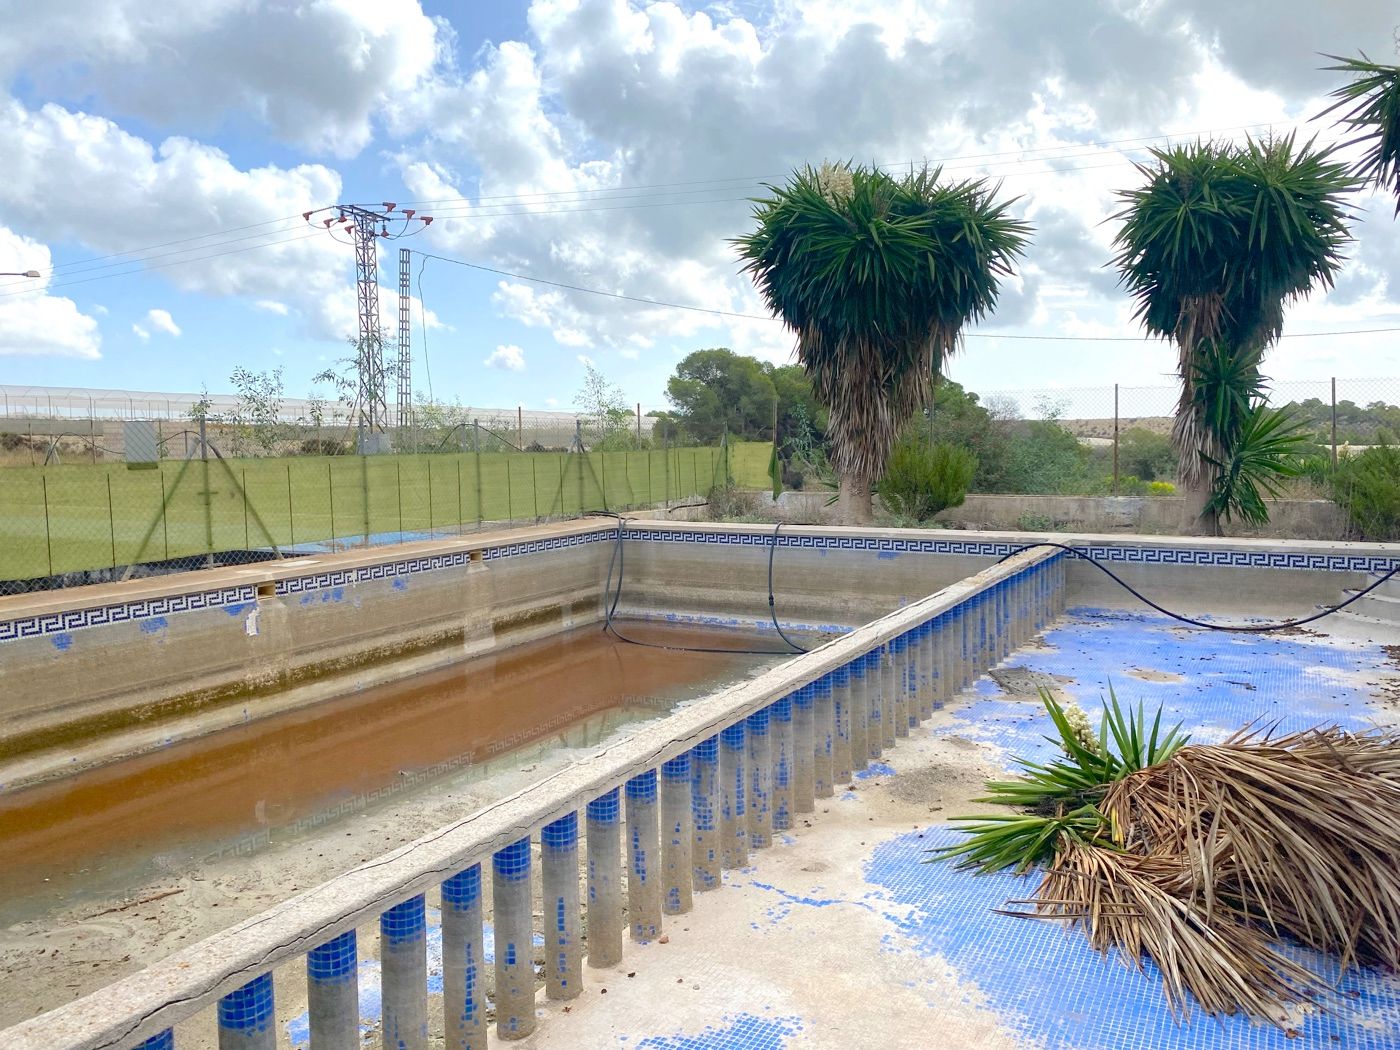 Finca rurale pour projet touristique avec appartements, restaurant, piscine à Orihuela